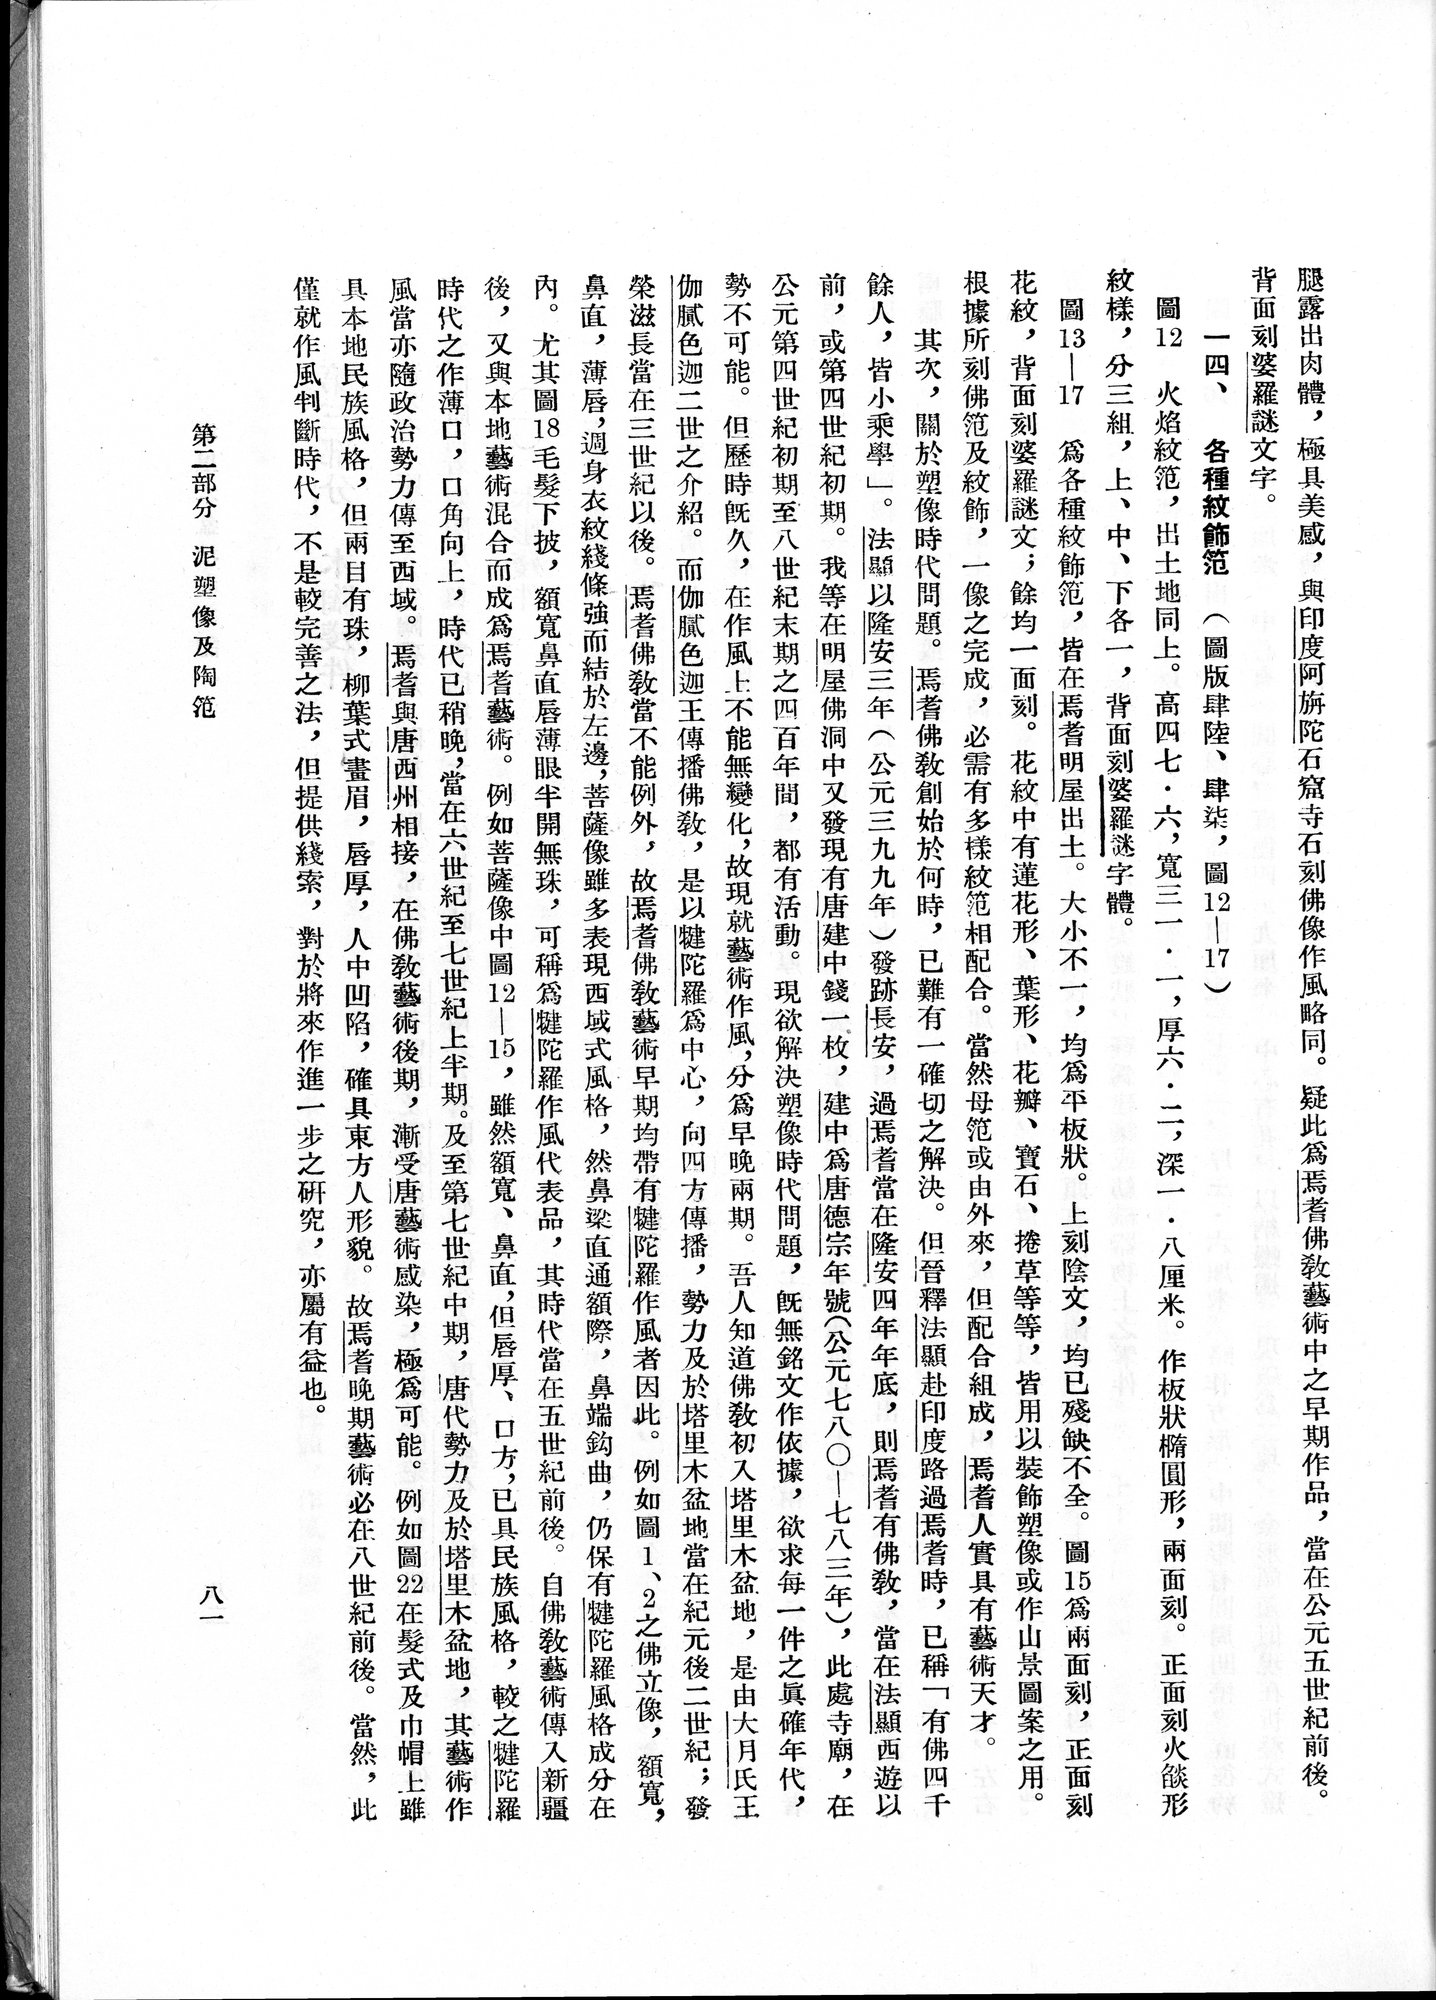 塔里木盆地考古記 : vol.1 / Page 145 (Grayscale High Resolution Image)